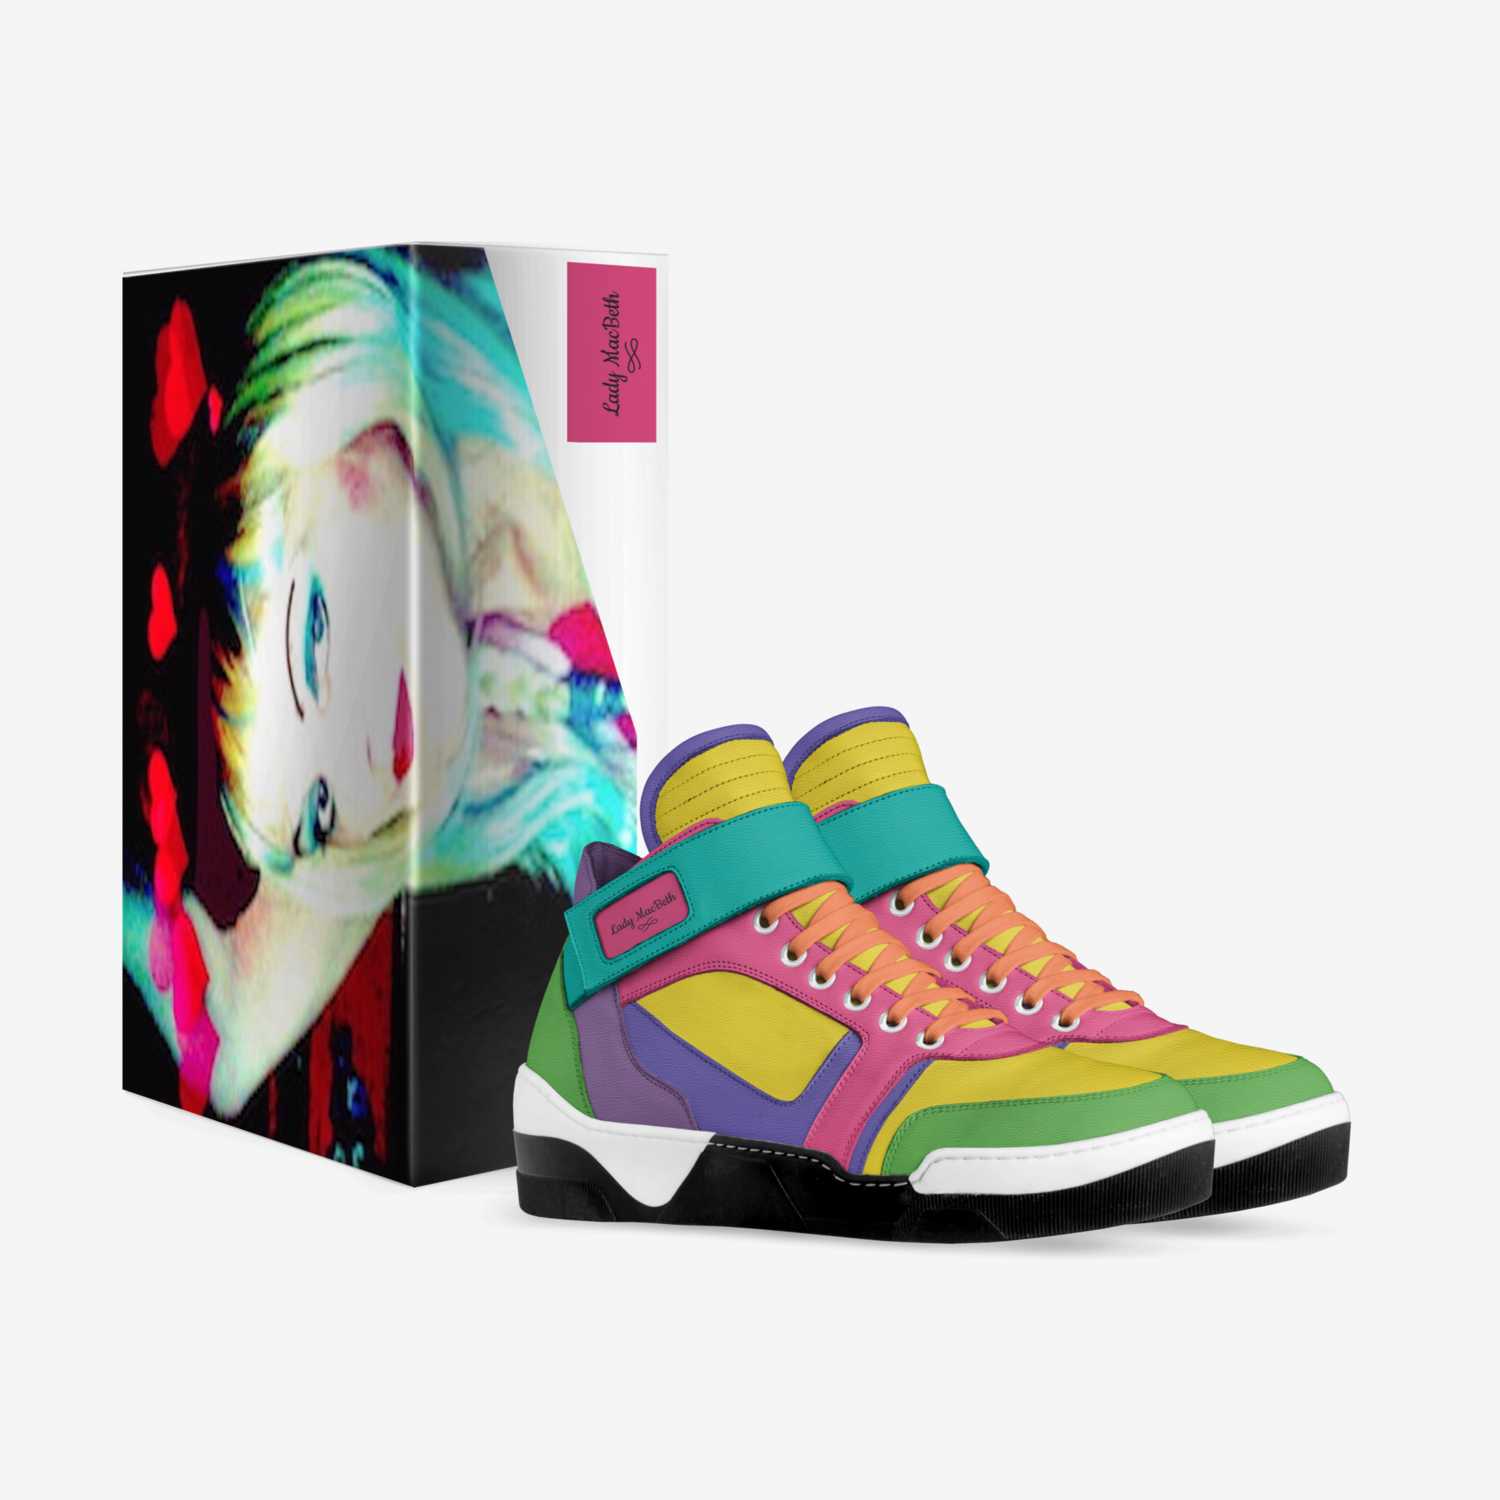 Lady MacBeth custom made in Italy shoes by Lauretta Macbeth | Box view